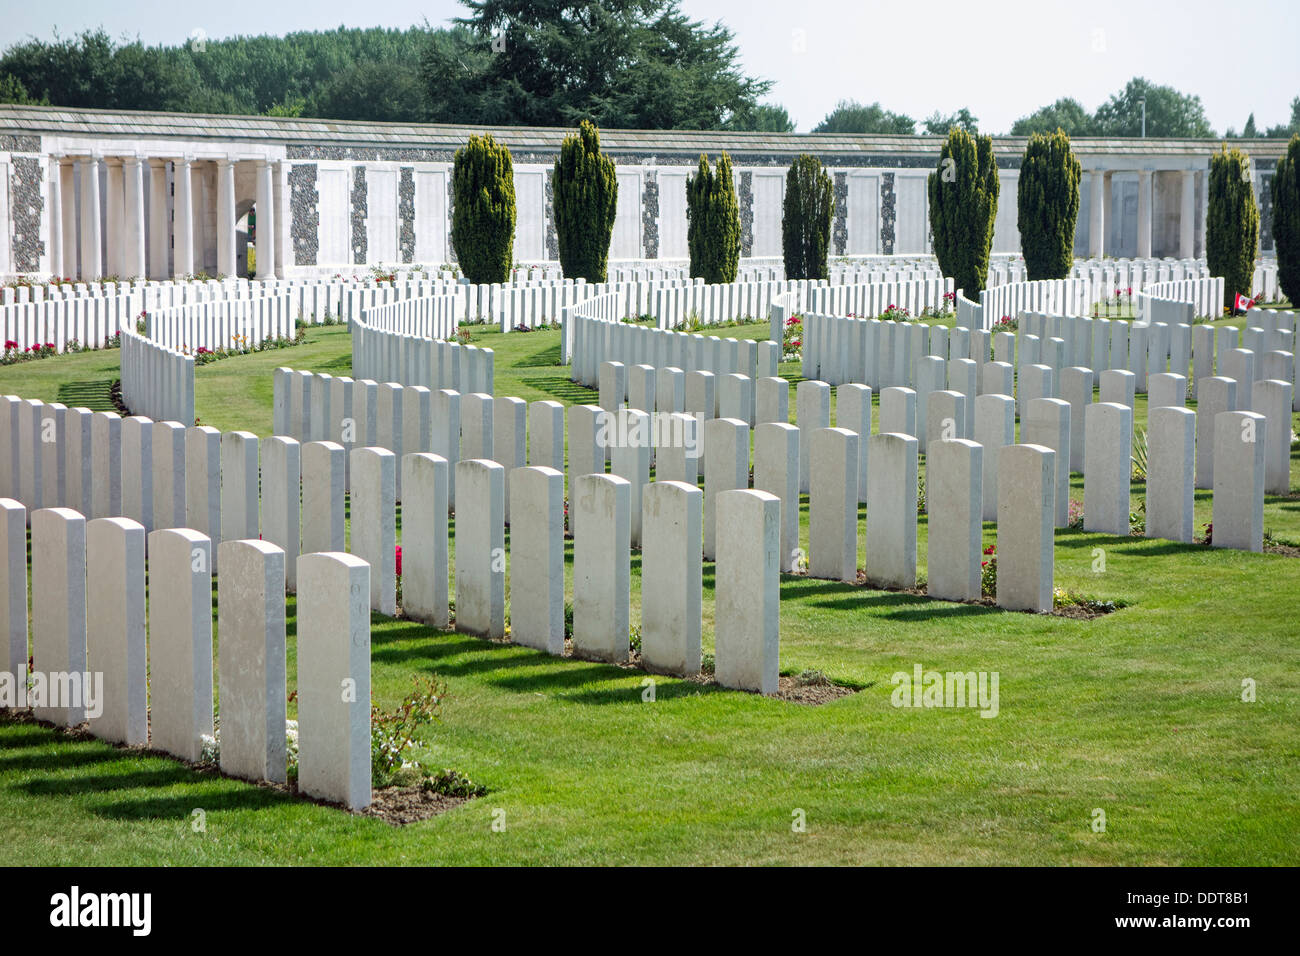 Mémorial aux disparus de la PREMIÈRE GUERRE MONDIALE au cimetière de Tyne Cot pour la première guerre mondiale, l'un des soldats britanniques, Zonnebeke, Flandre occidentale, Belgique Banque D'Images